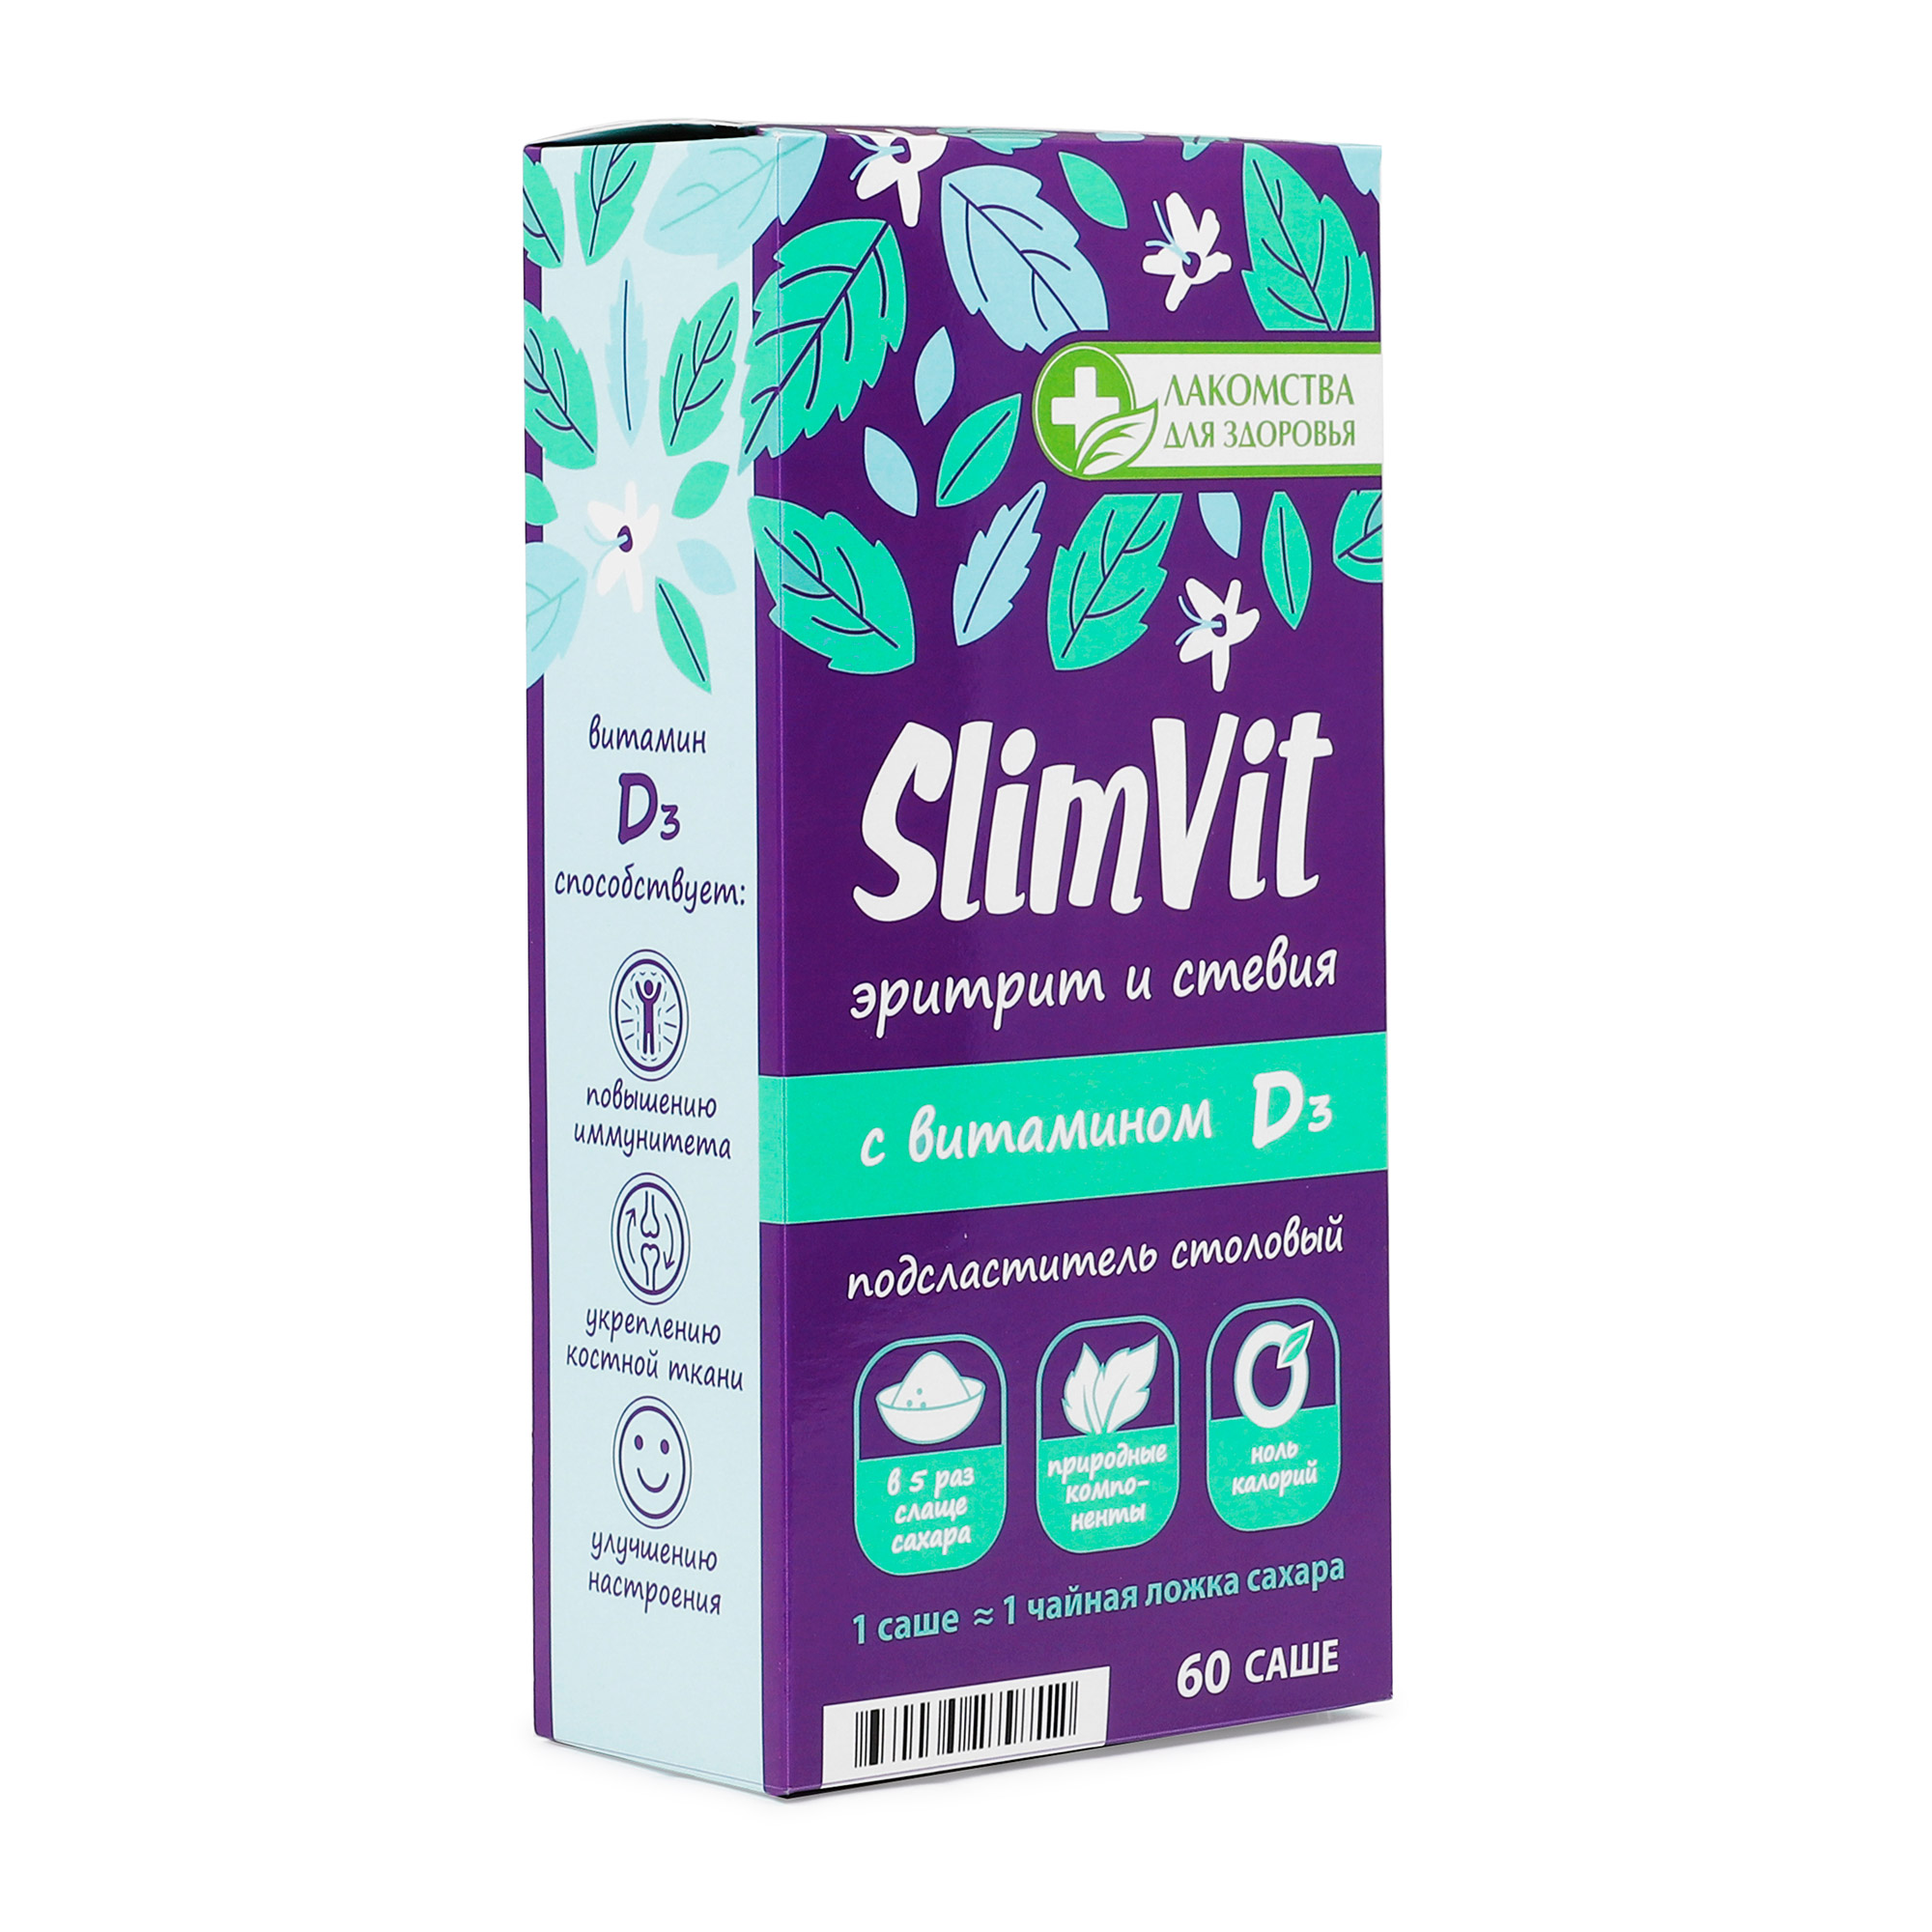 Подсластитель столовый Лакомства для здоровья SlimVit эритрит и стевия с витамином Dз 60 г азбука здоровья подсластитель стевия таб 150